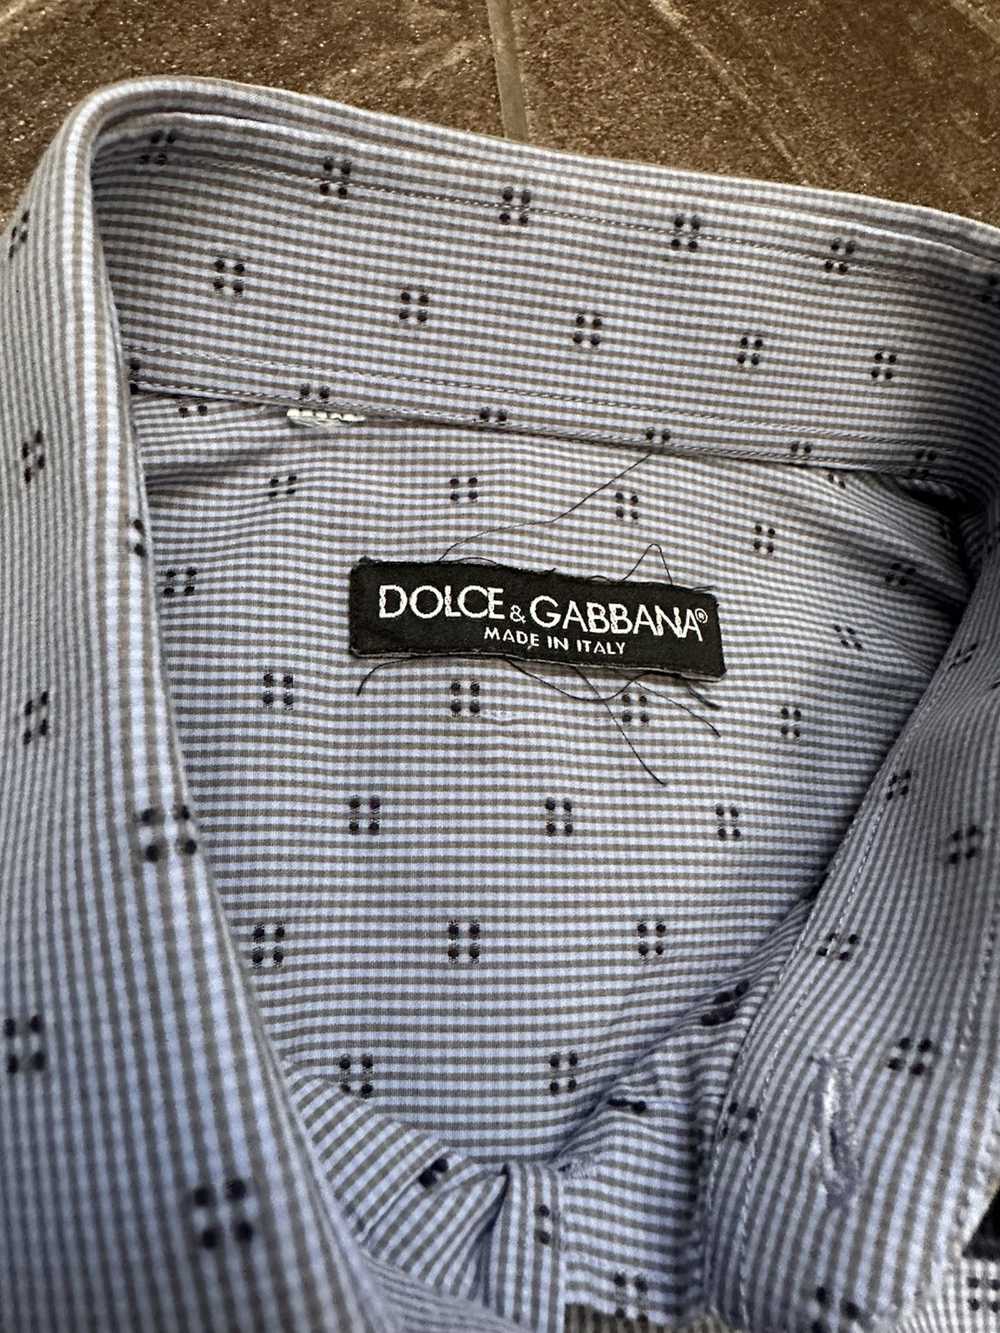 Dolce & Gabbana Dolce & Gabbana Shirt - image 3